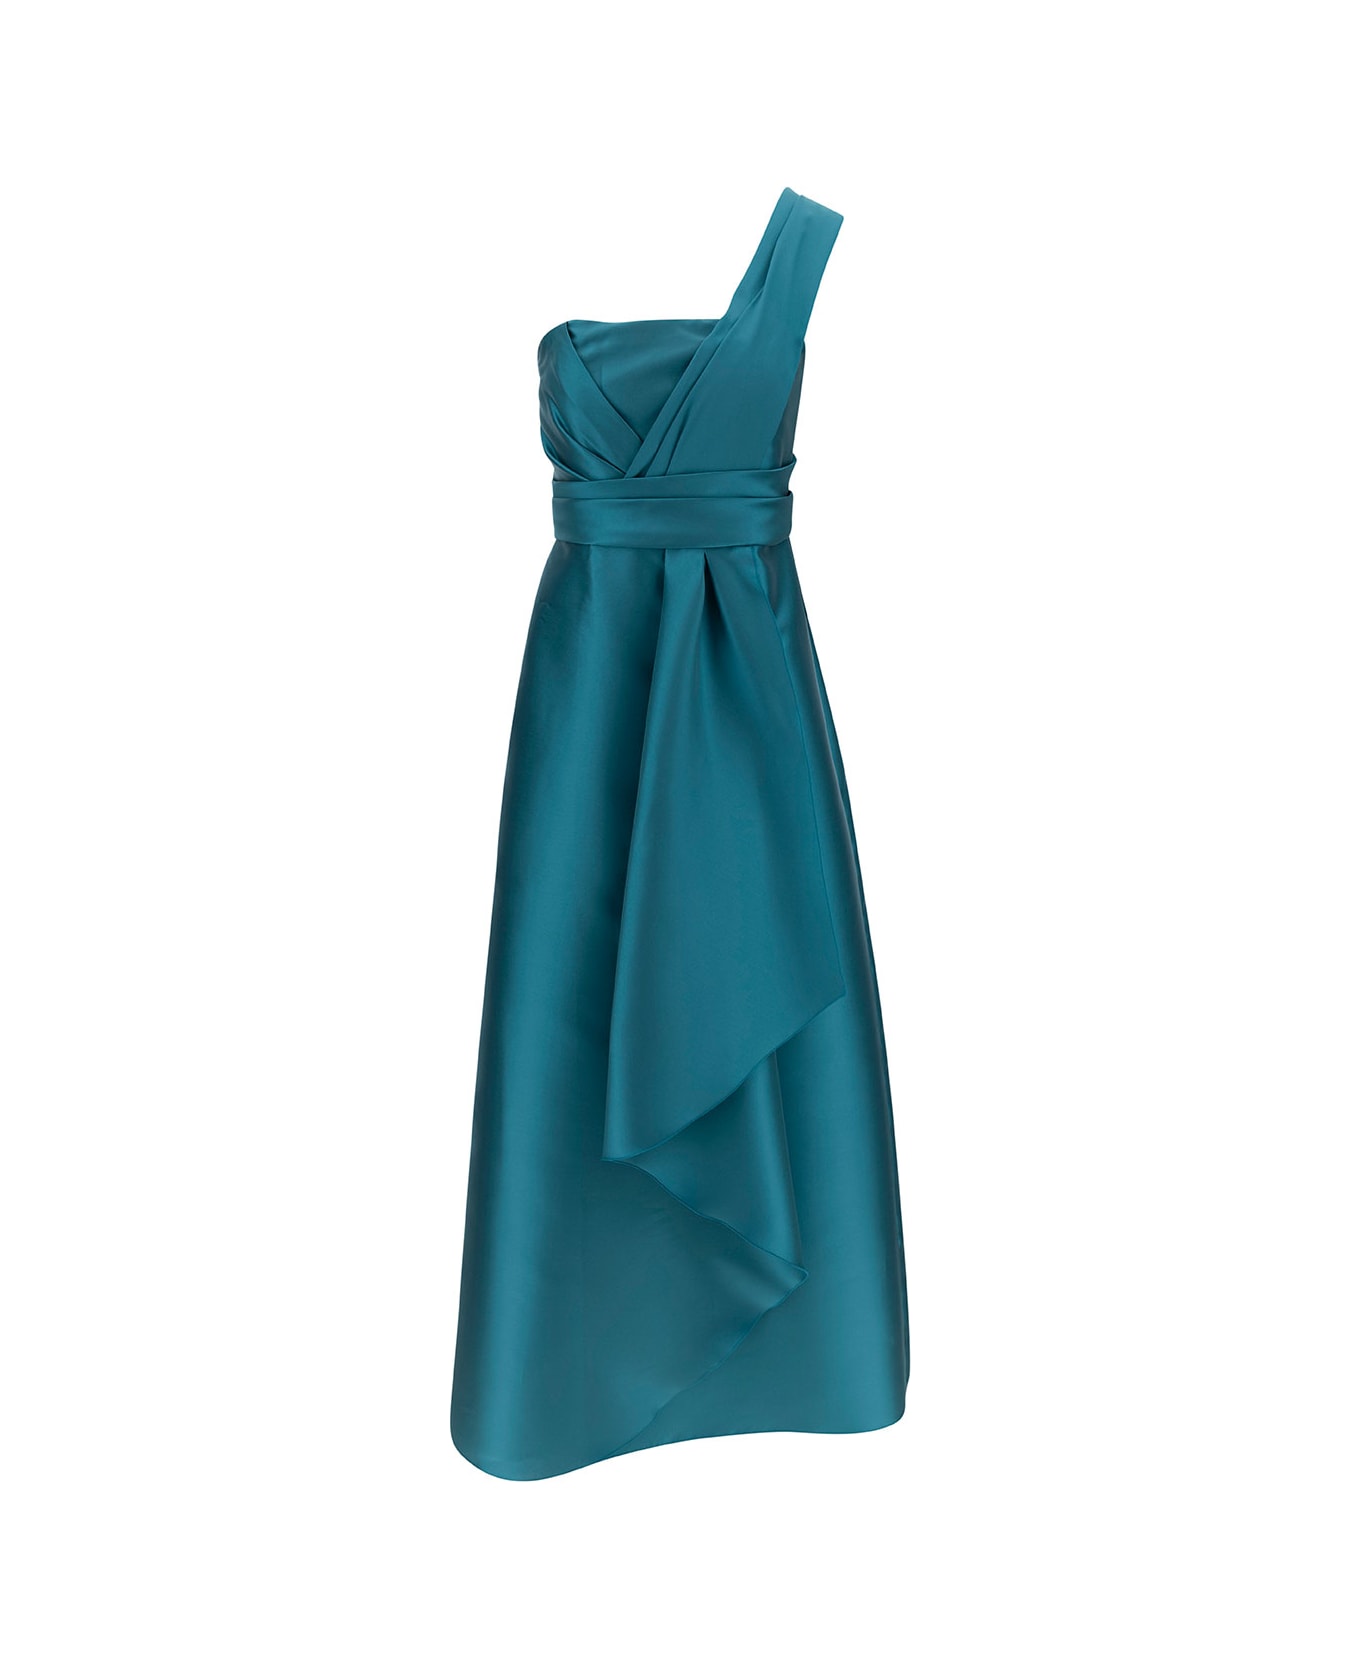 Alberta Ferretti 'mikado' Light Blue Maxi One-shoulder Draped Dress In Satin Woman - Light blue